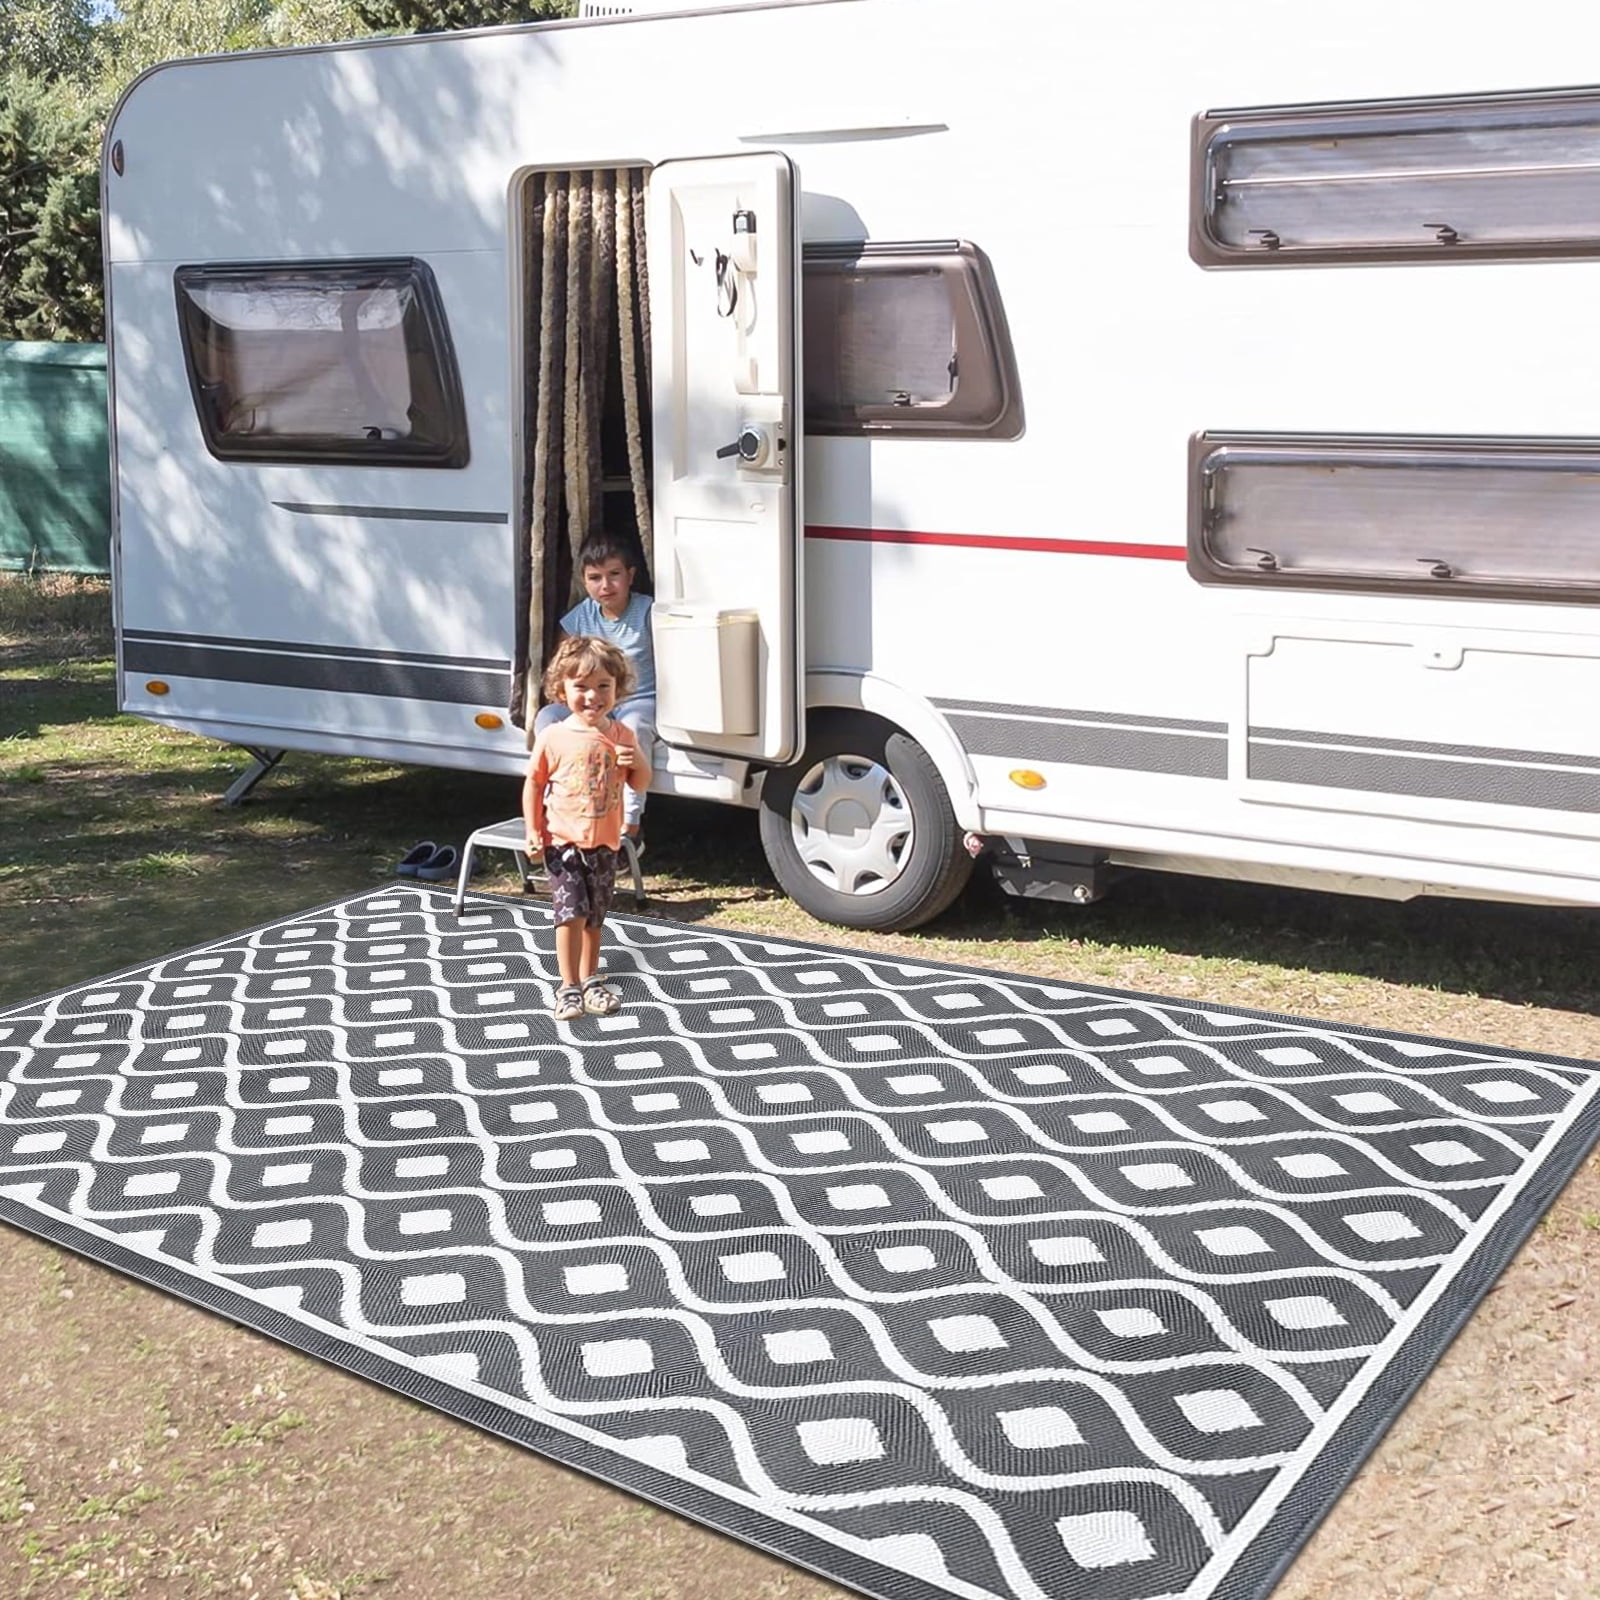 Camping Carpet Decor Indoor Outdoor Doormat Camper Rv Front - Temu